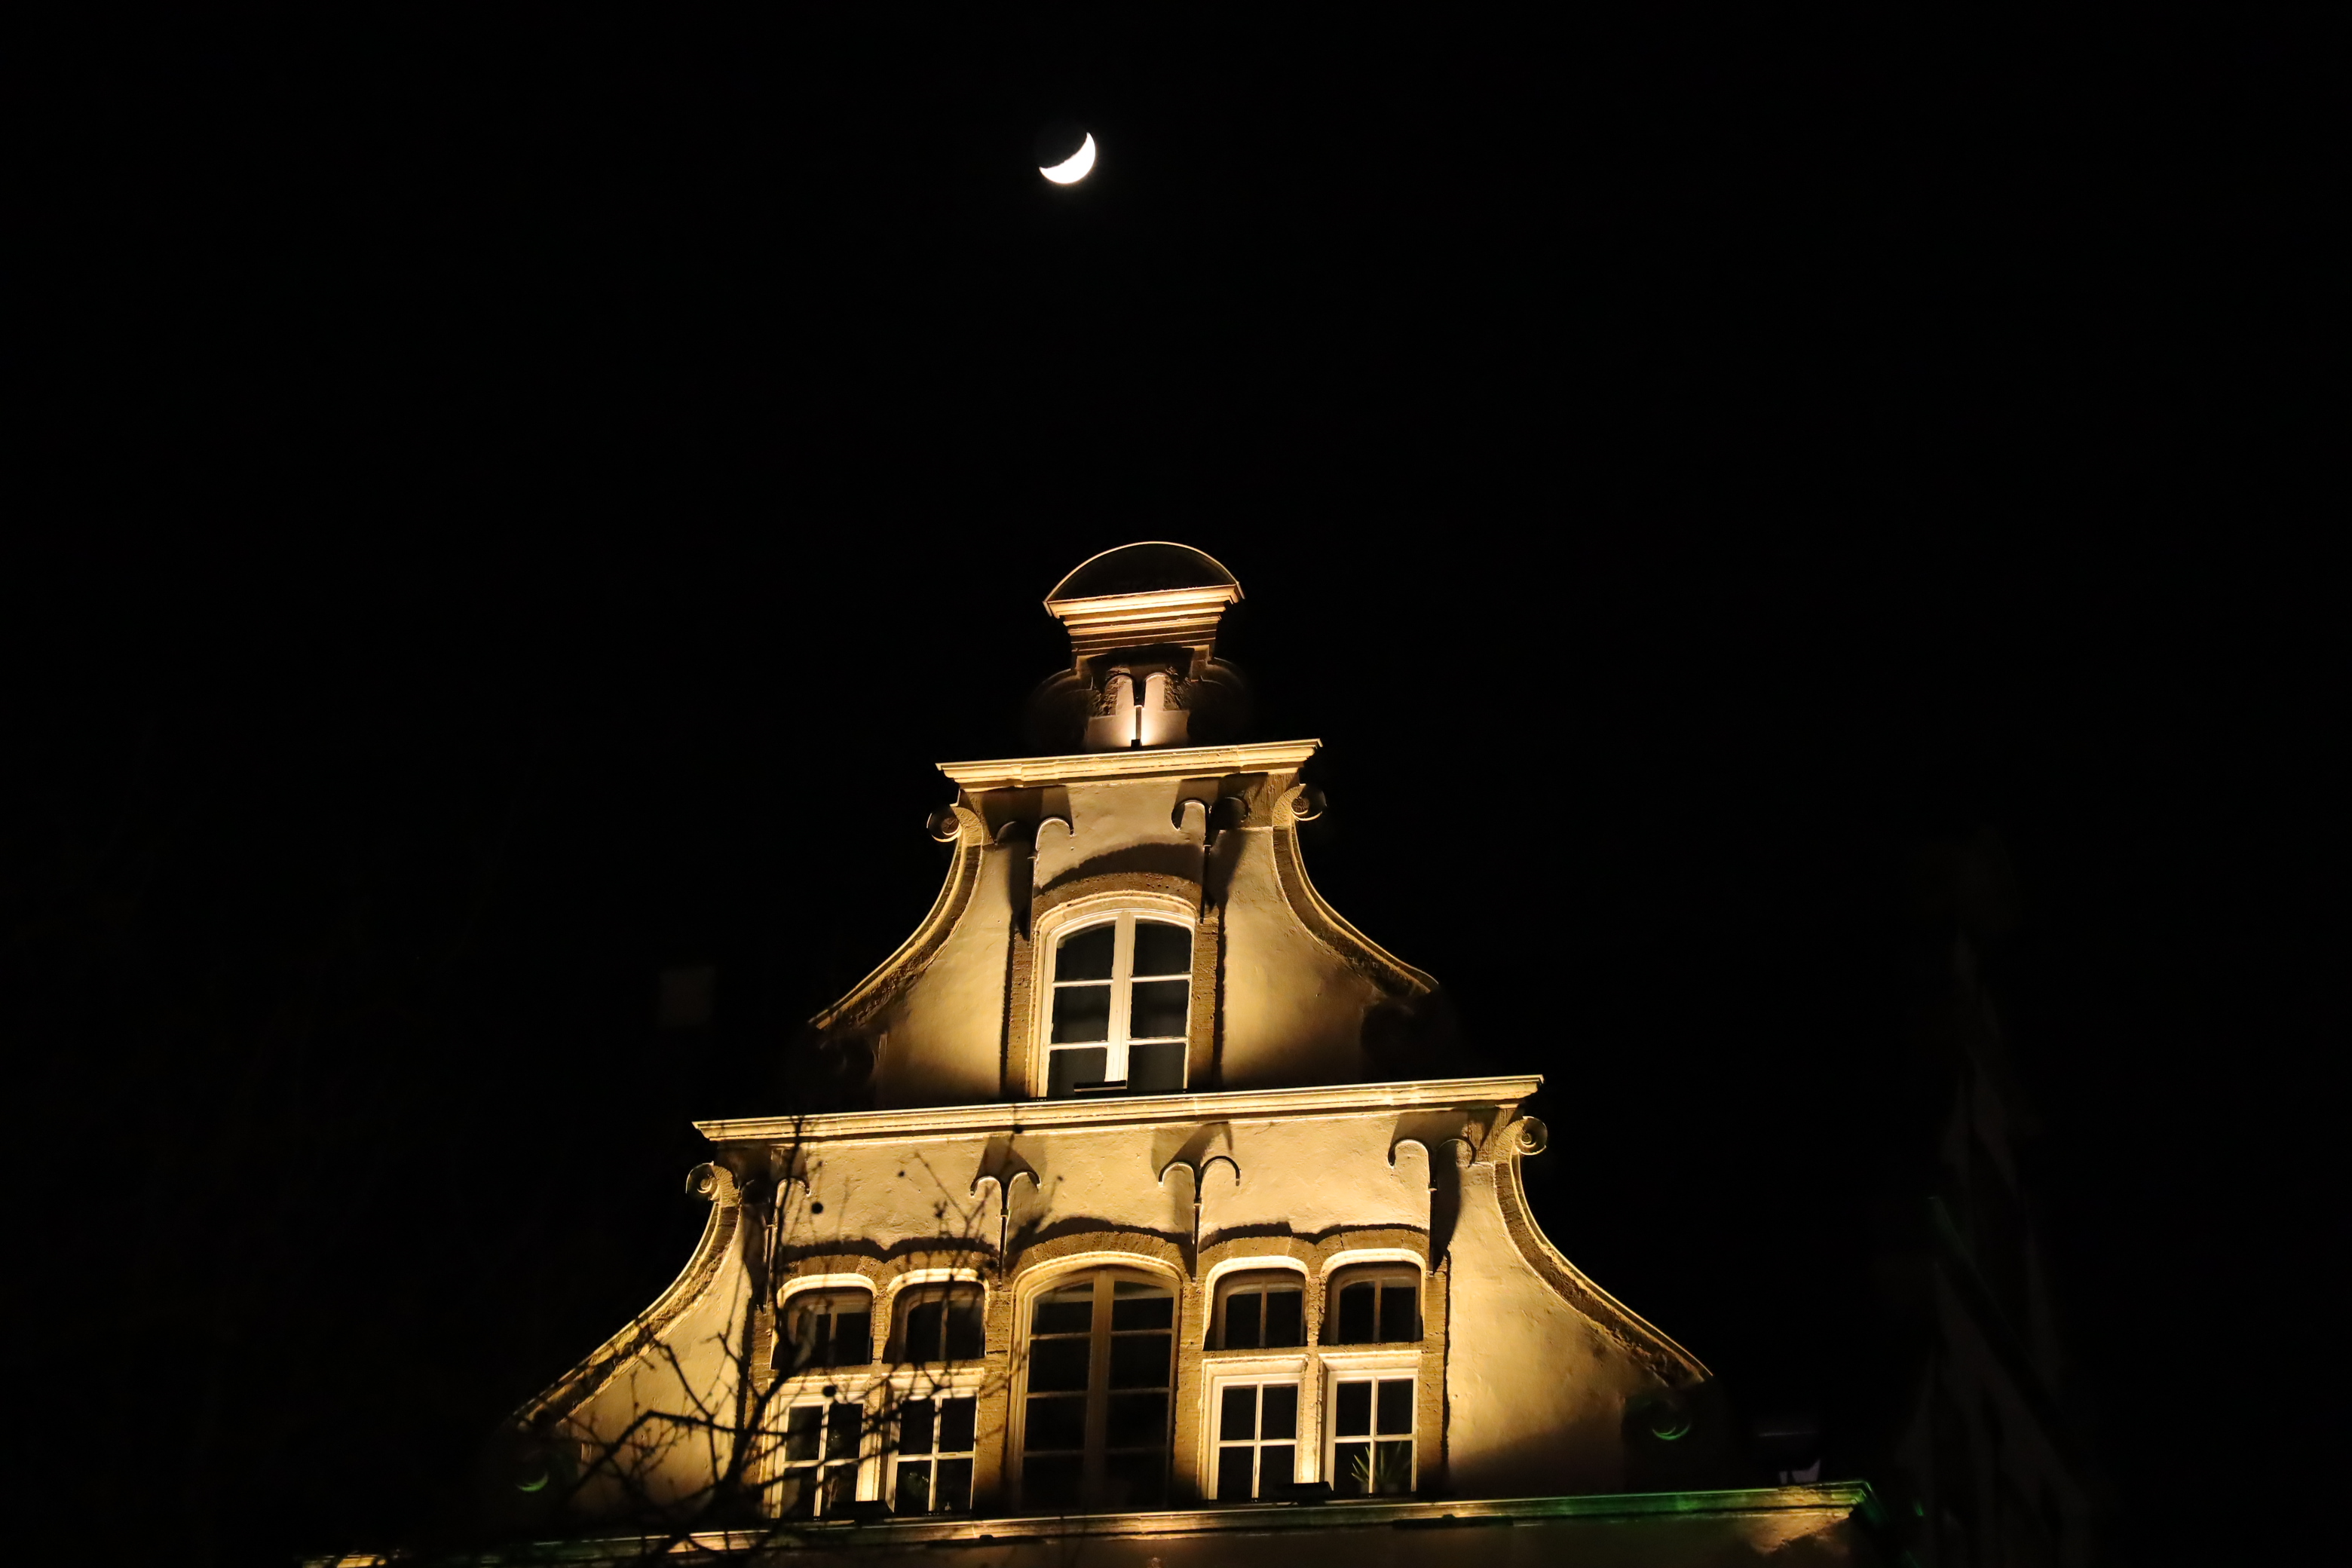 Altbau mit Mond. Bild vom Kölner Altermarkt. Trotz ISO 12.800 kaum Rauschen. Blende: 4.0, Verschlusszeit 1/160s, Brennweite: 105mm